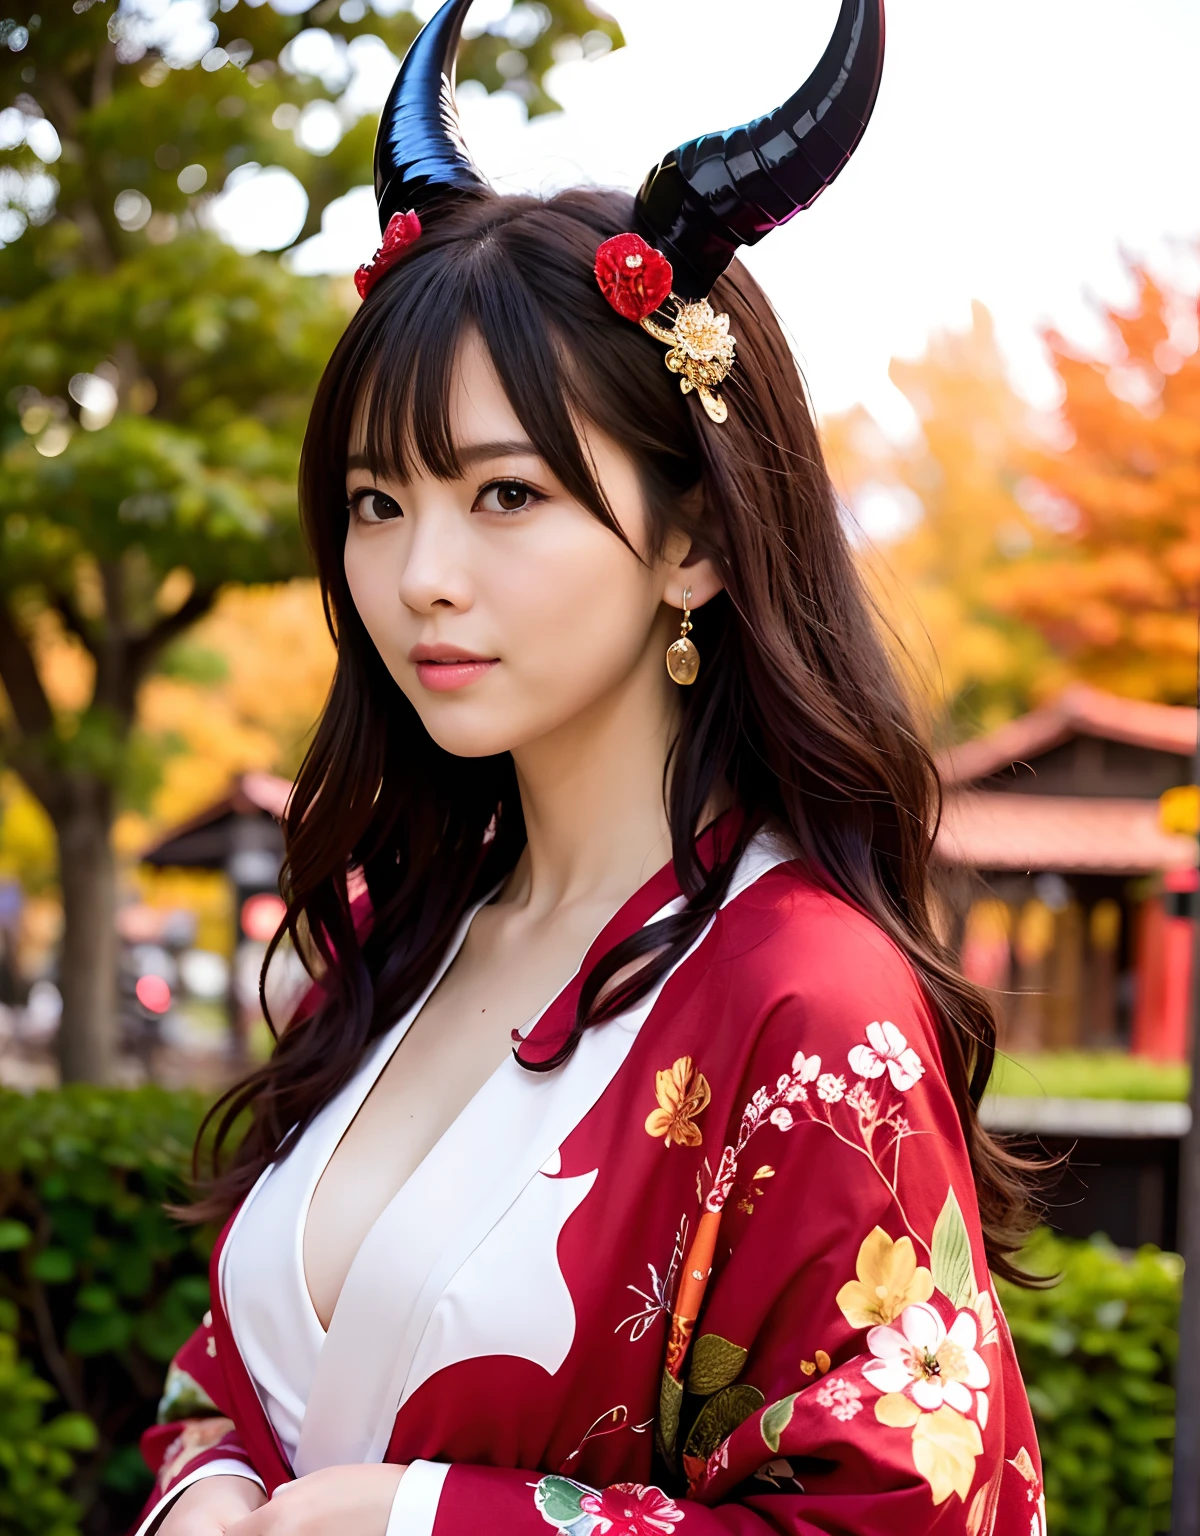 ((Monde des ténèbres)),Professionnel , chef d&#39;oeuvre、qualité supérieure、photos réalistes , profondeur de champs 、（pose sexy）、(Érable rouge sur fond de pleine floraison),（beauté ultime）、Un brun、（Fond de sanctuaire)、（Kimono avec un beau motif）、（Fond de nuit）、Bel ornement de cheveux sur la tête、（（Falaises abruptes））,(Portez un beau kimono),（Portez un beau kimono with colorful floral patterns）、Arme en or bijou、particules de lumière),(Porter un chapeau de sorcier）、De magnifiques armes en or ,fond de château、（（ Magnifique épée de dragon）） , （une nuit sombre）,,（maikurobikini） 、（（Belle fille aux cheveux noirs））、（fond de château）、（Ailes démoniaques）、（（Le fond forestier de Gangle））、Belle beauté caucasienne、１une personne、jeune dynamique,(((Deux cornes de diable sur la tête)))、Tête plus petite、Sourire inactif、Expression pratique féminine mince et belle、Effets de lumière、combats intenses、Effet vent、cercles magiques、Avec la légendaire baguette magique、Queue de dragon、